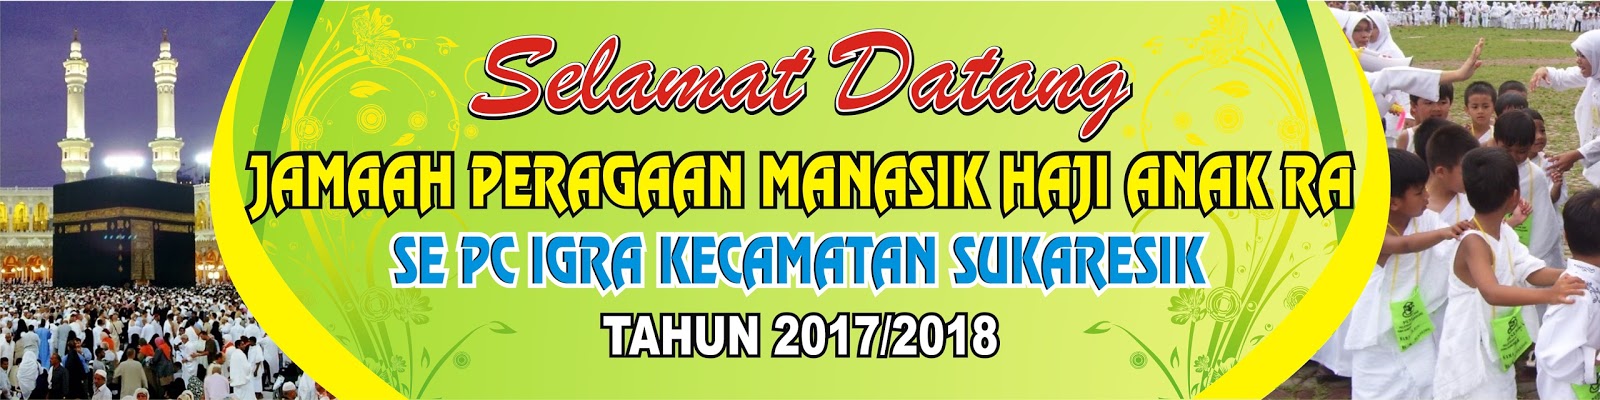 Download Spanduk Manasik Haji cdr KARYAKU